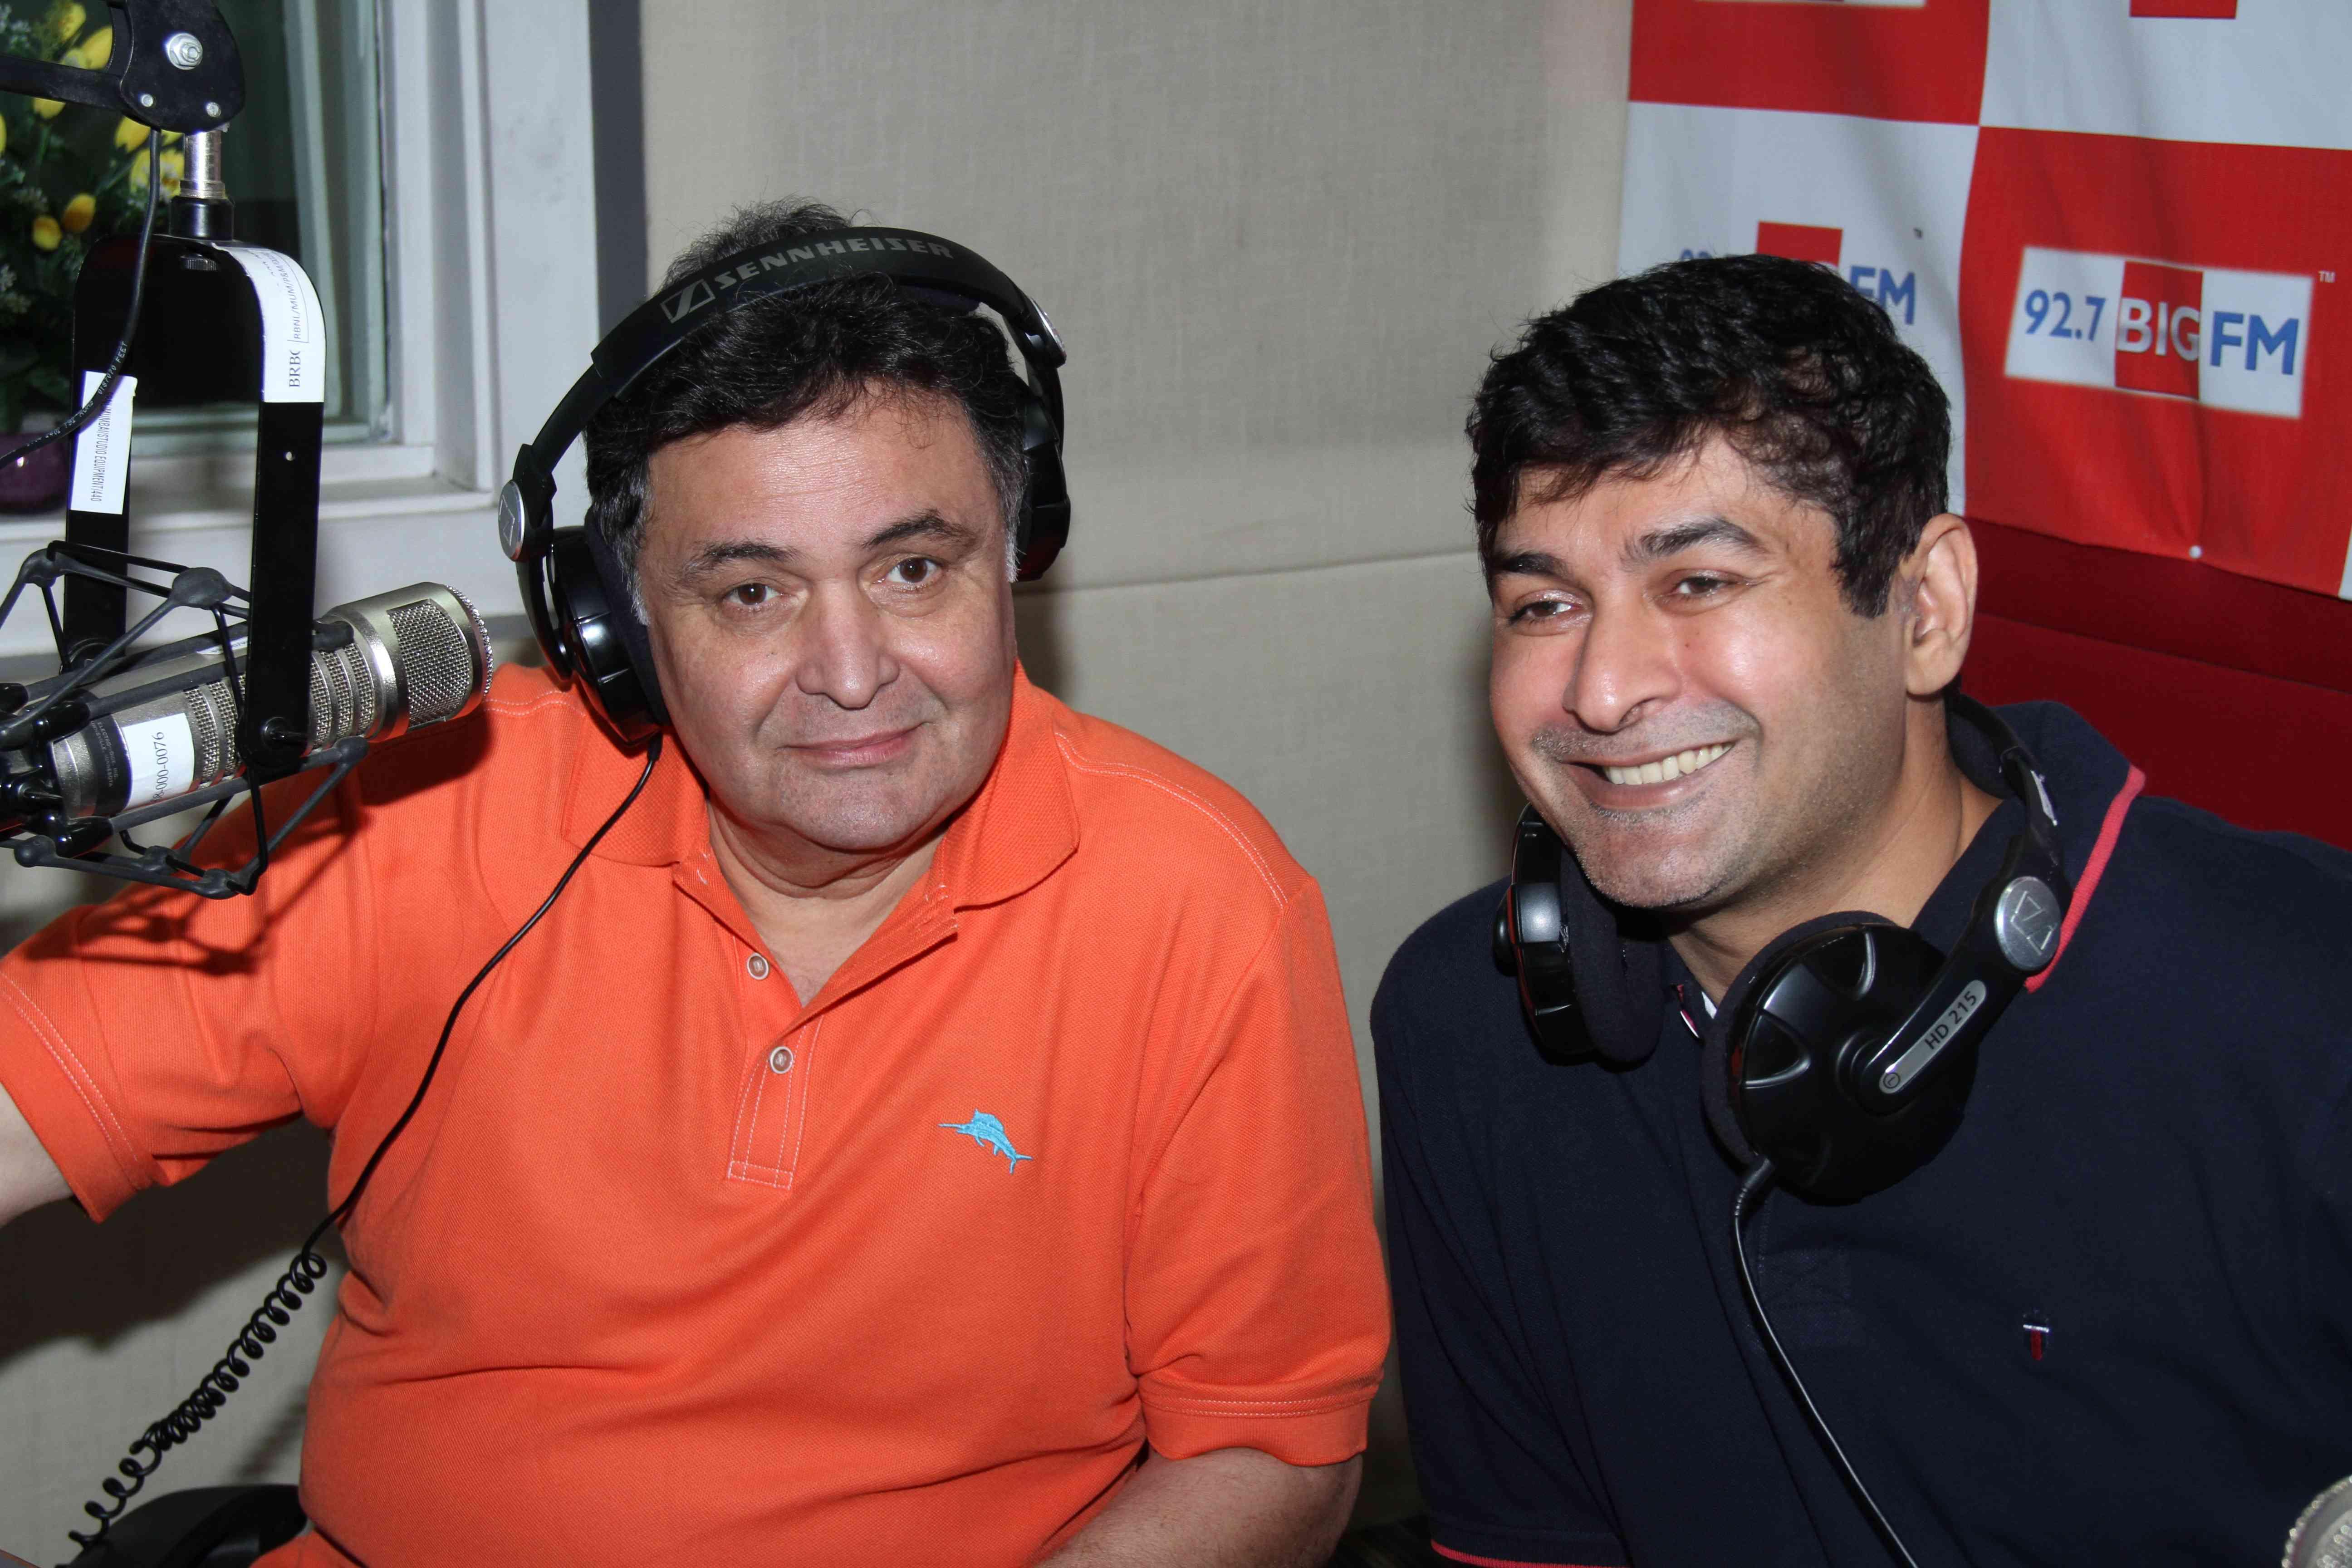 Rishi Kapoor Celebrates Birthday At 92.7 big FM Radio Station